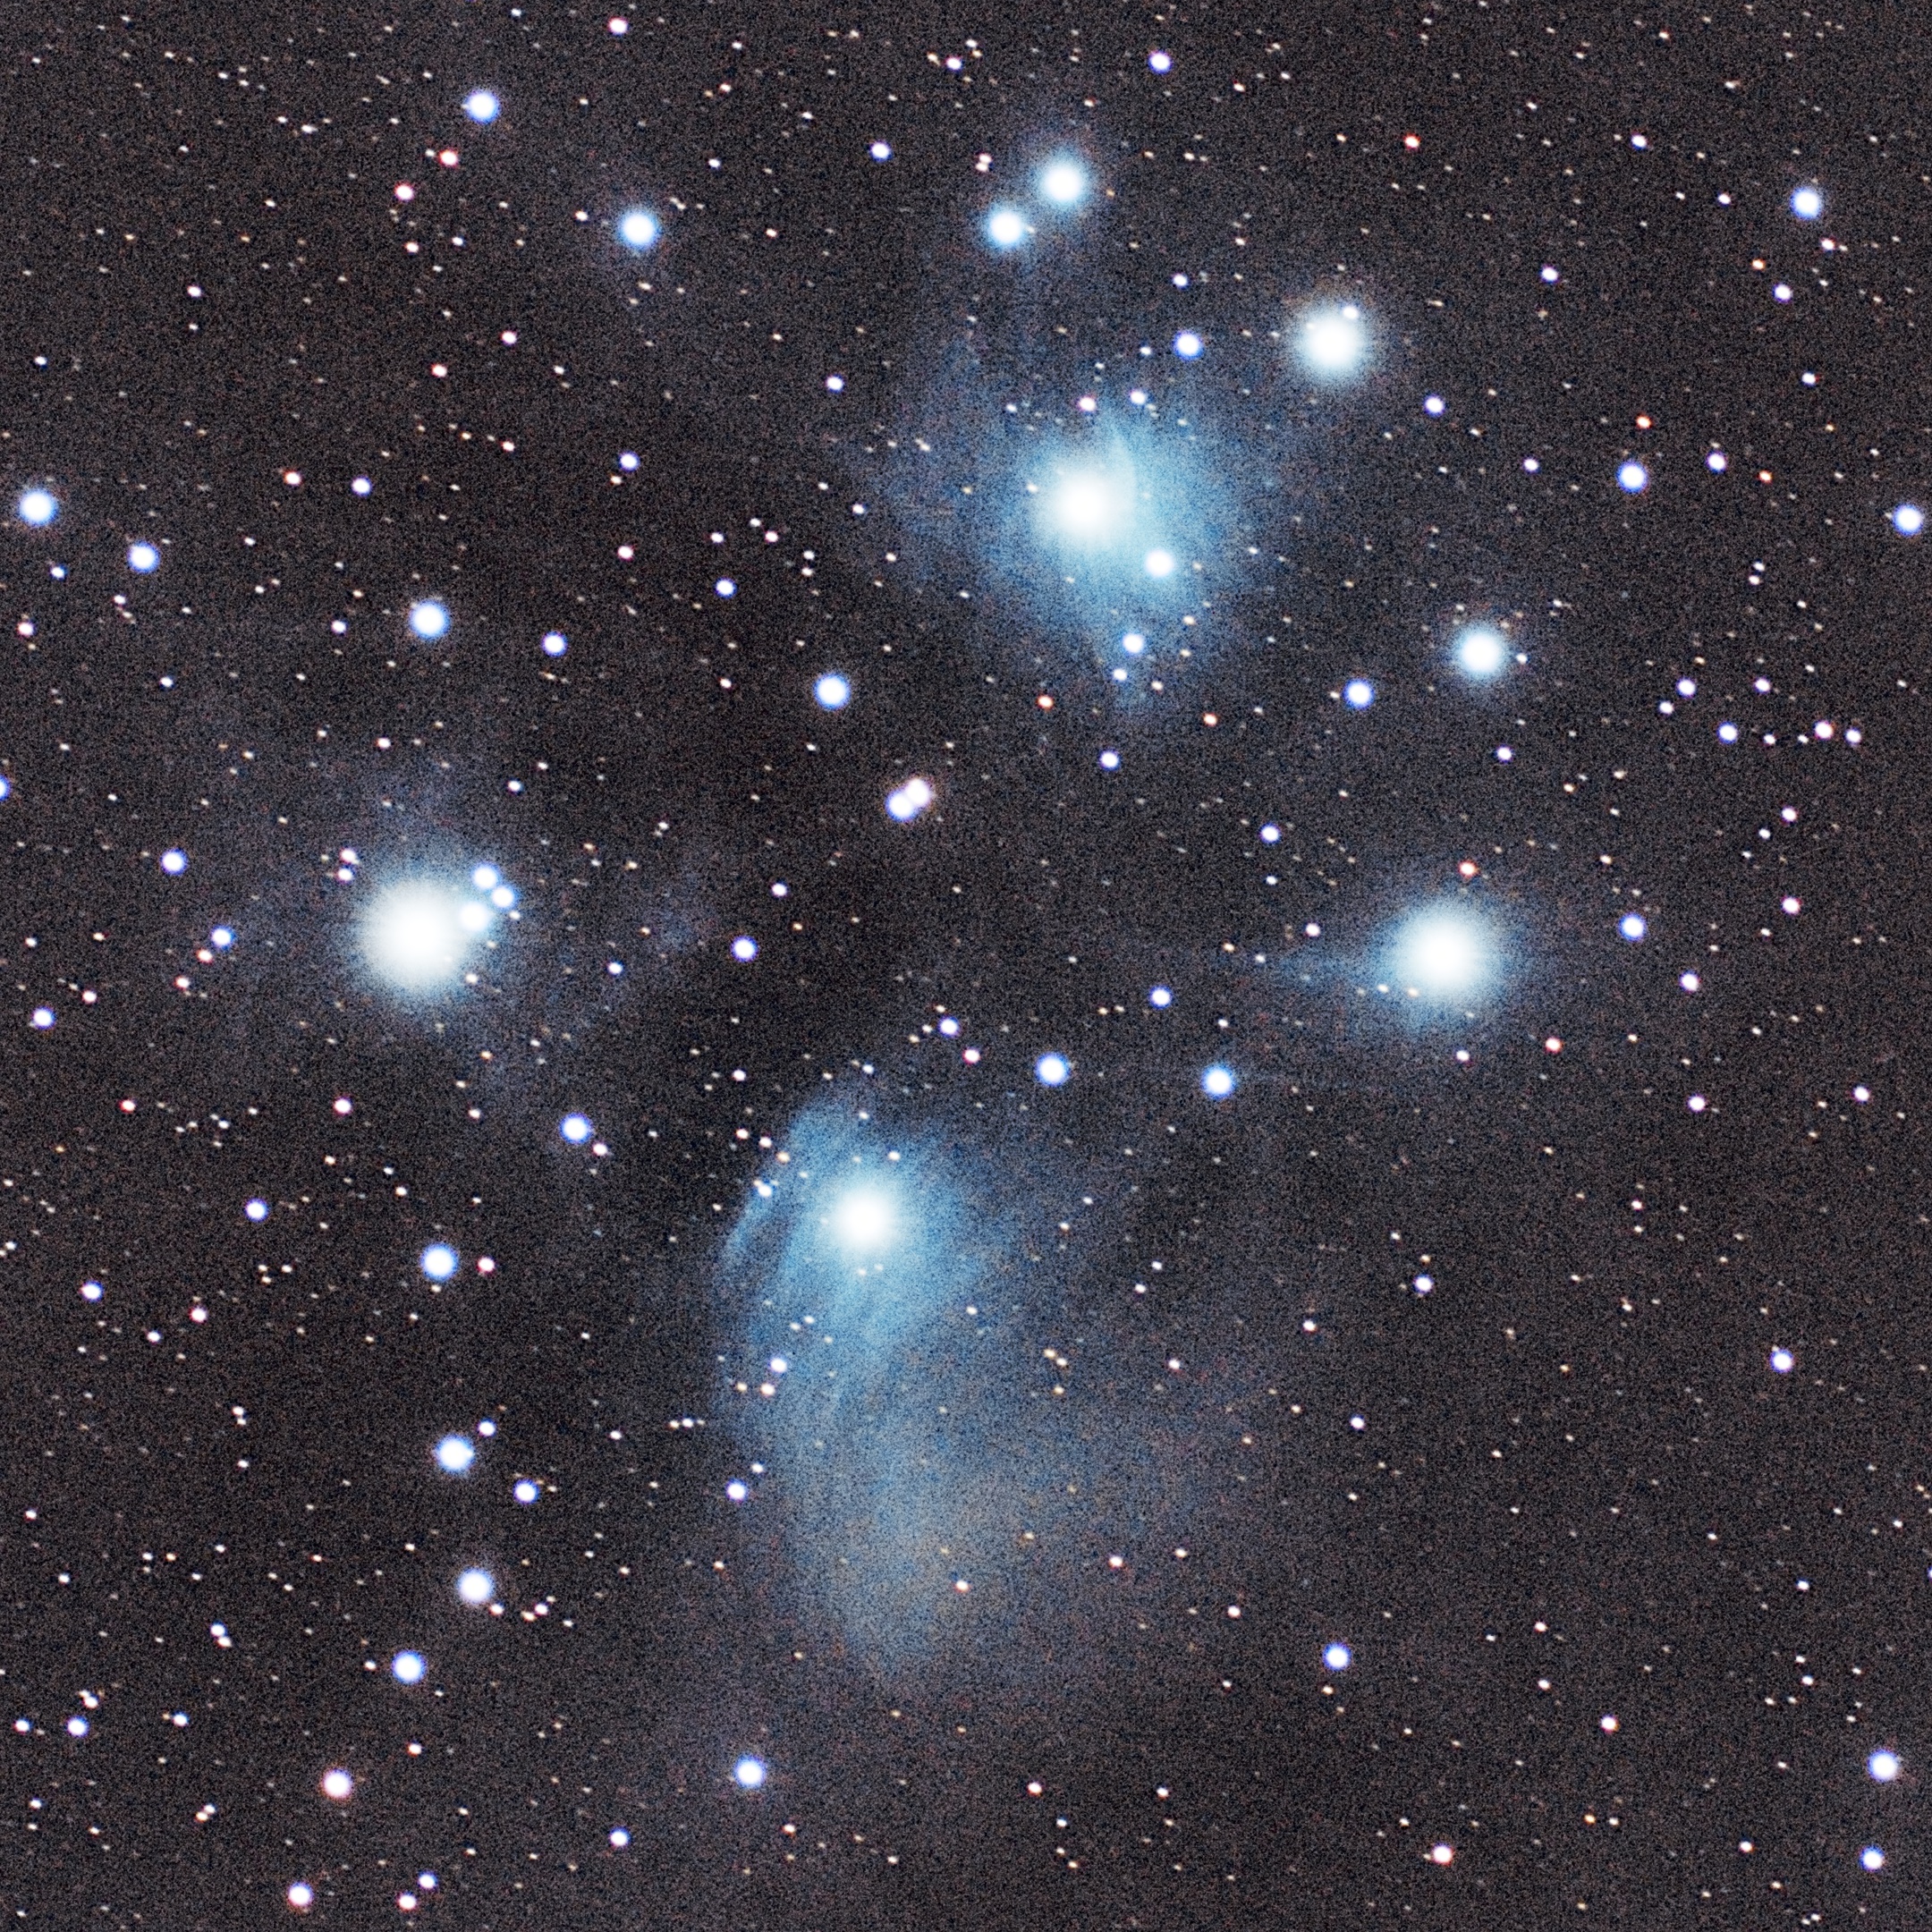 Pleiades/Seven Sisters (M45)